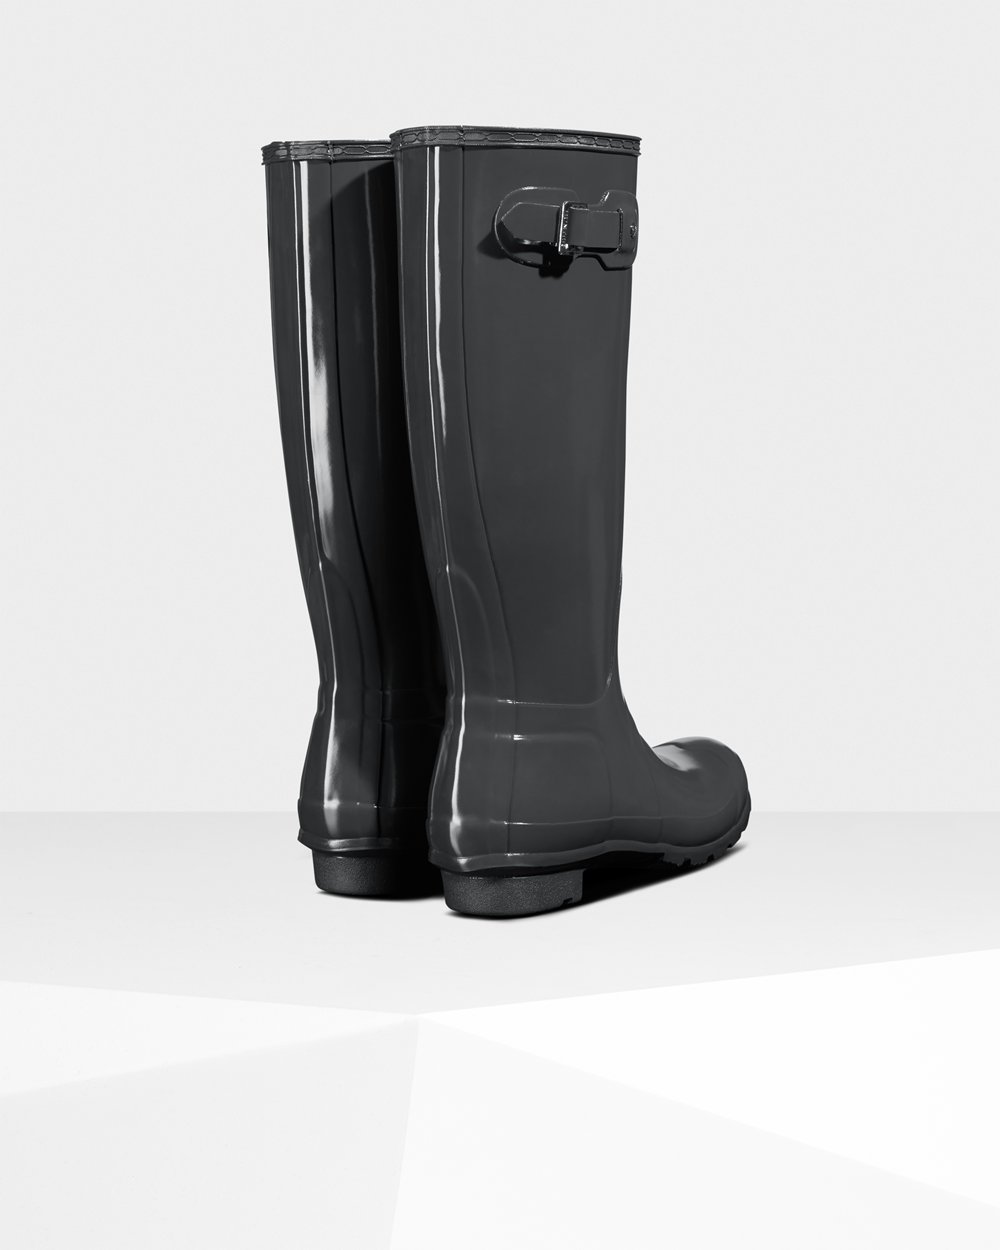 Womens Tall Rain Boots - Hunter Original Gloss (65ECFGHMN) - Deep Green